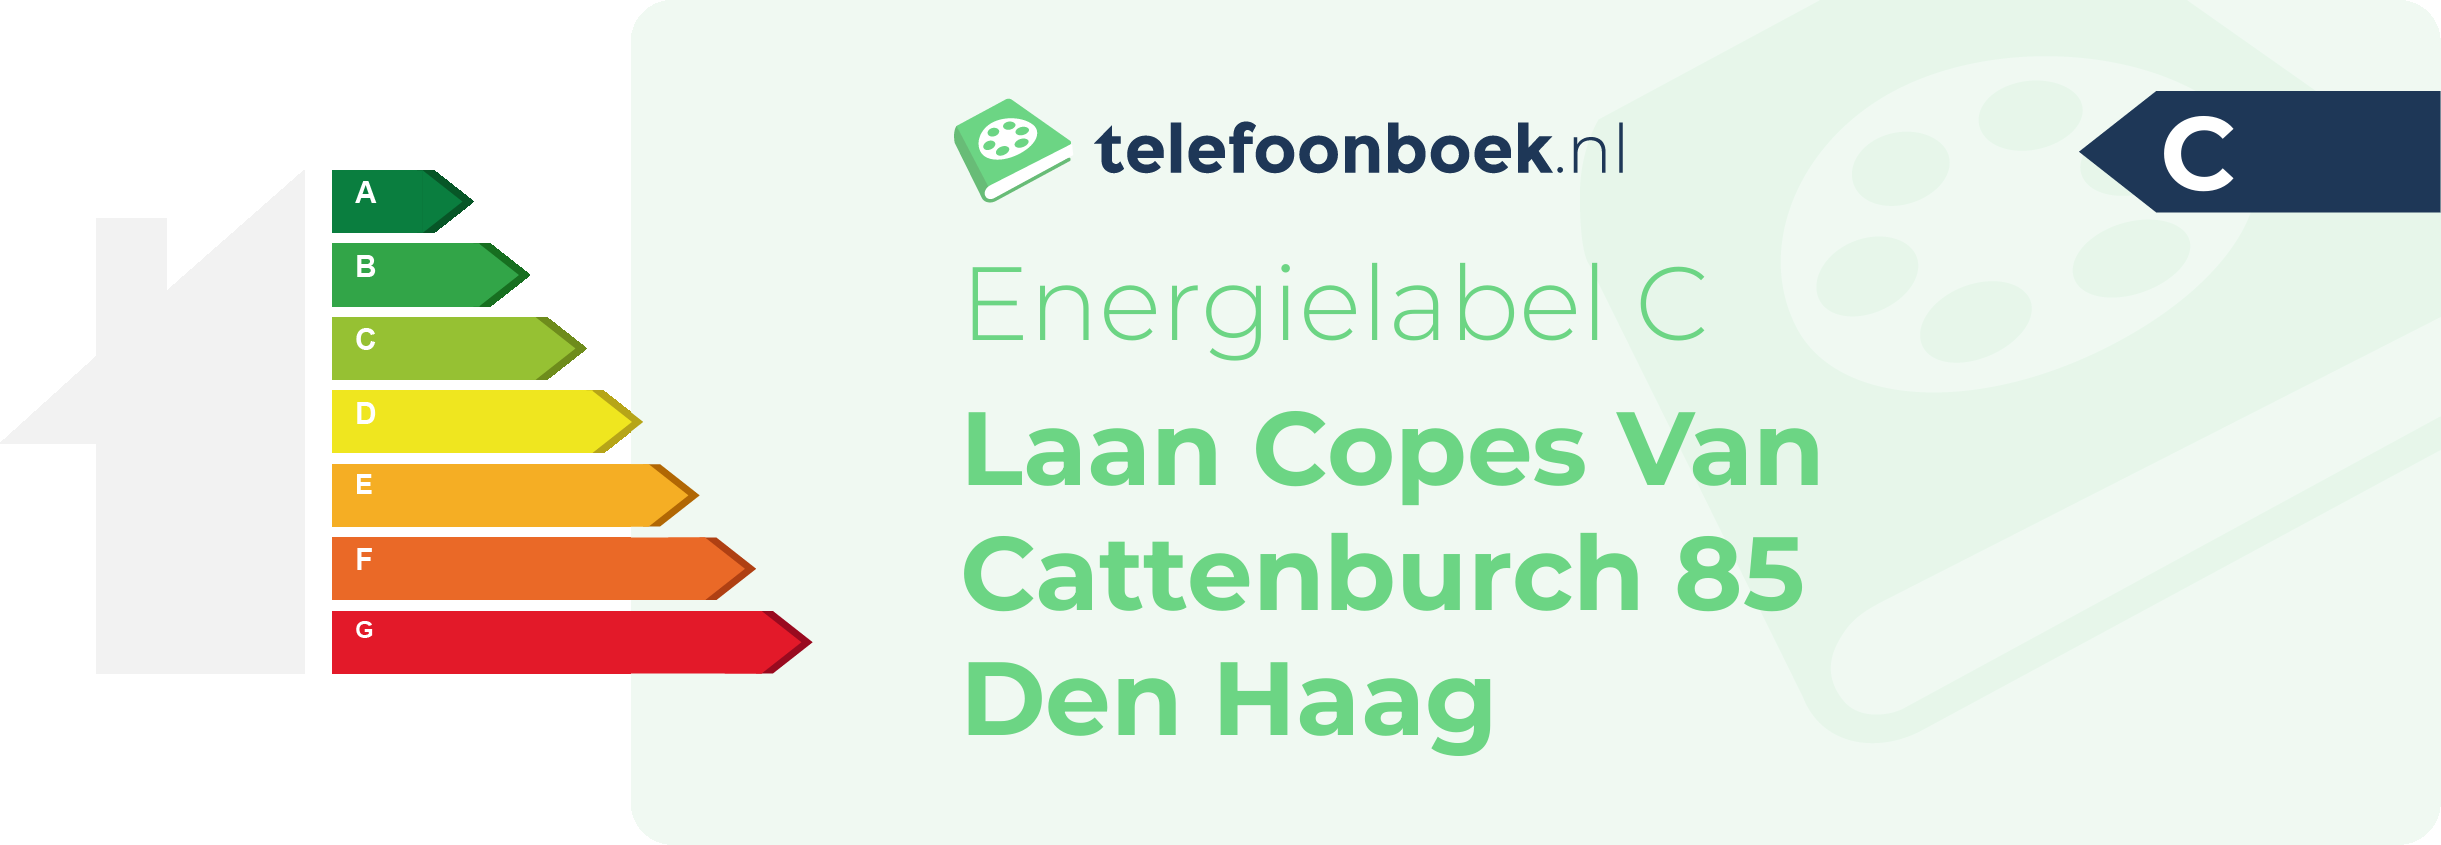 Energielabel Laan Copes Van Cattenburch 85 Den Haag